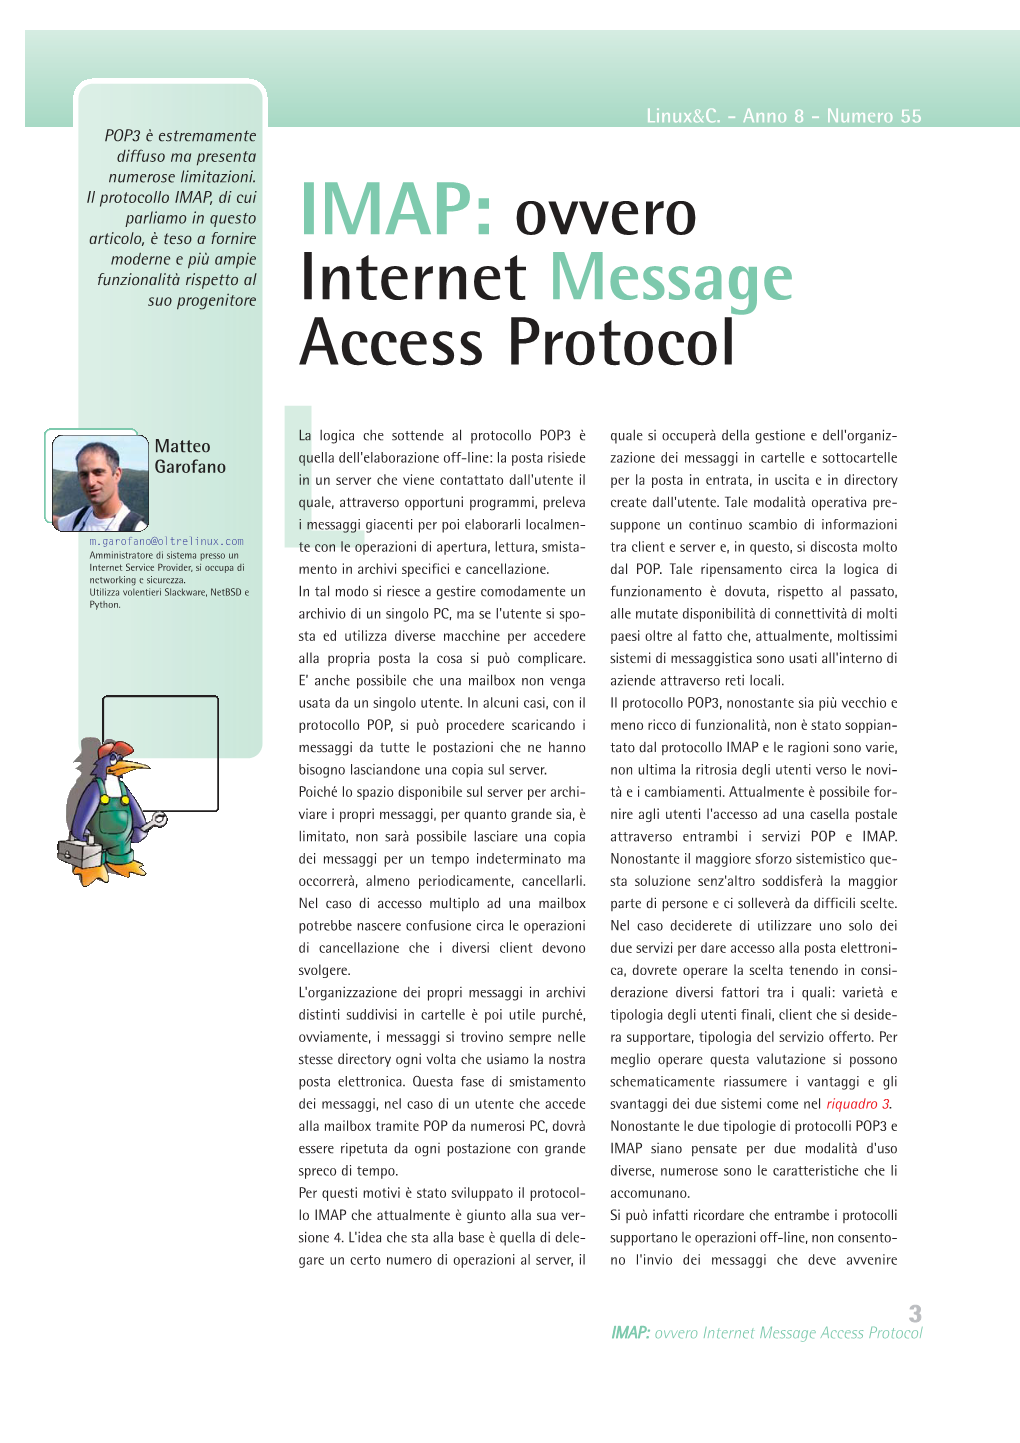 IMAP: Ovvero Moderne E Più Ampie Funzionalità Rispetto Al Suo Progenitore Internet Message Access Protocol